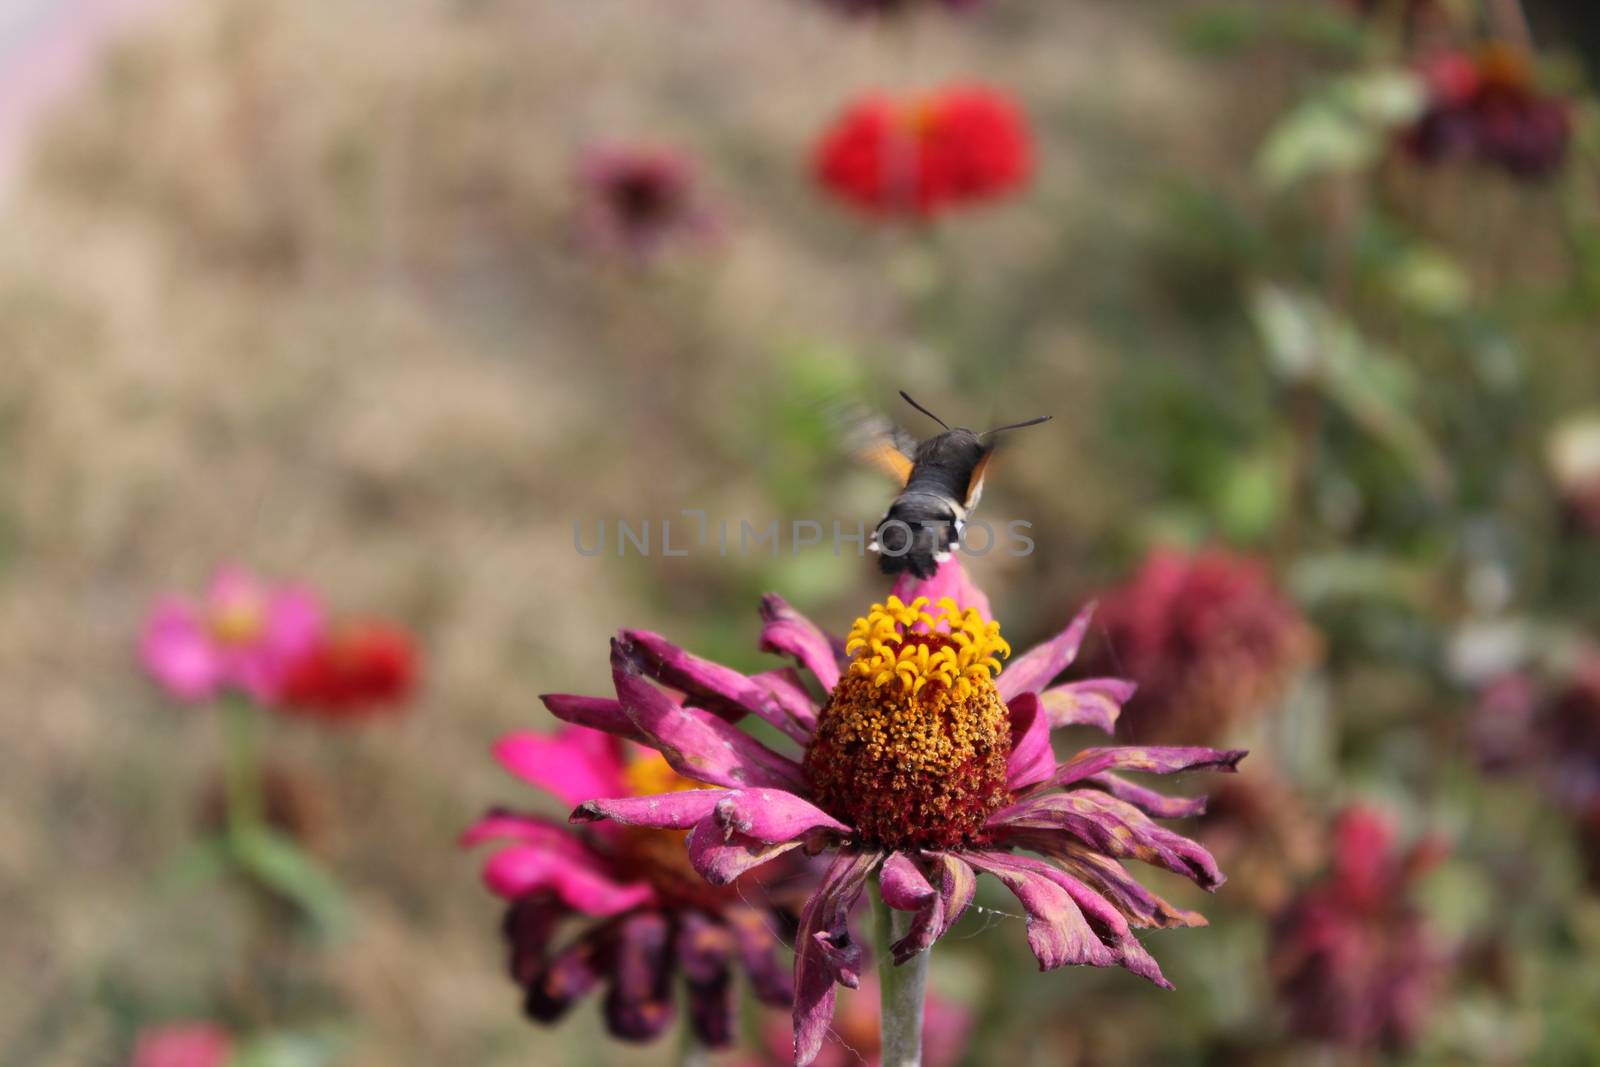 Hummingbird Hawk-moth in flight, over a flower.